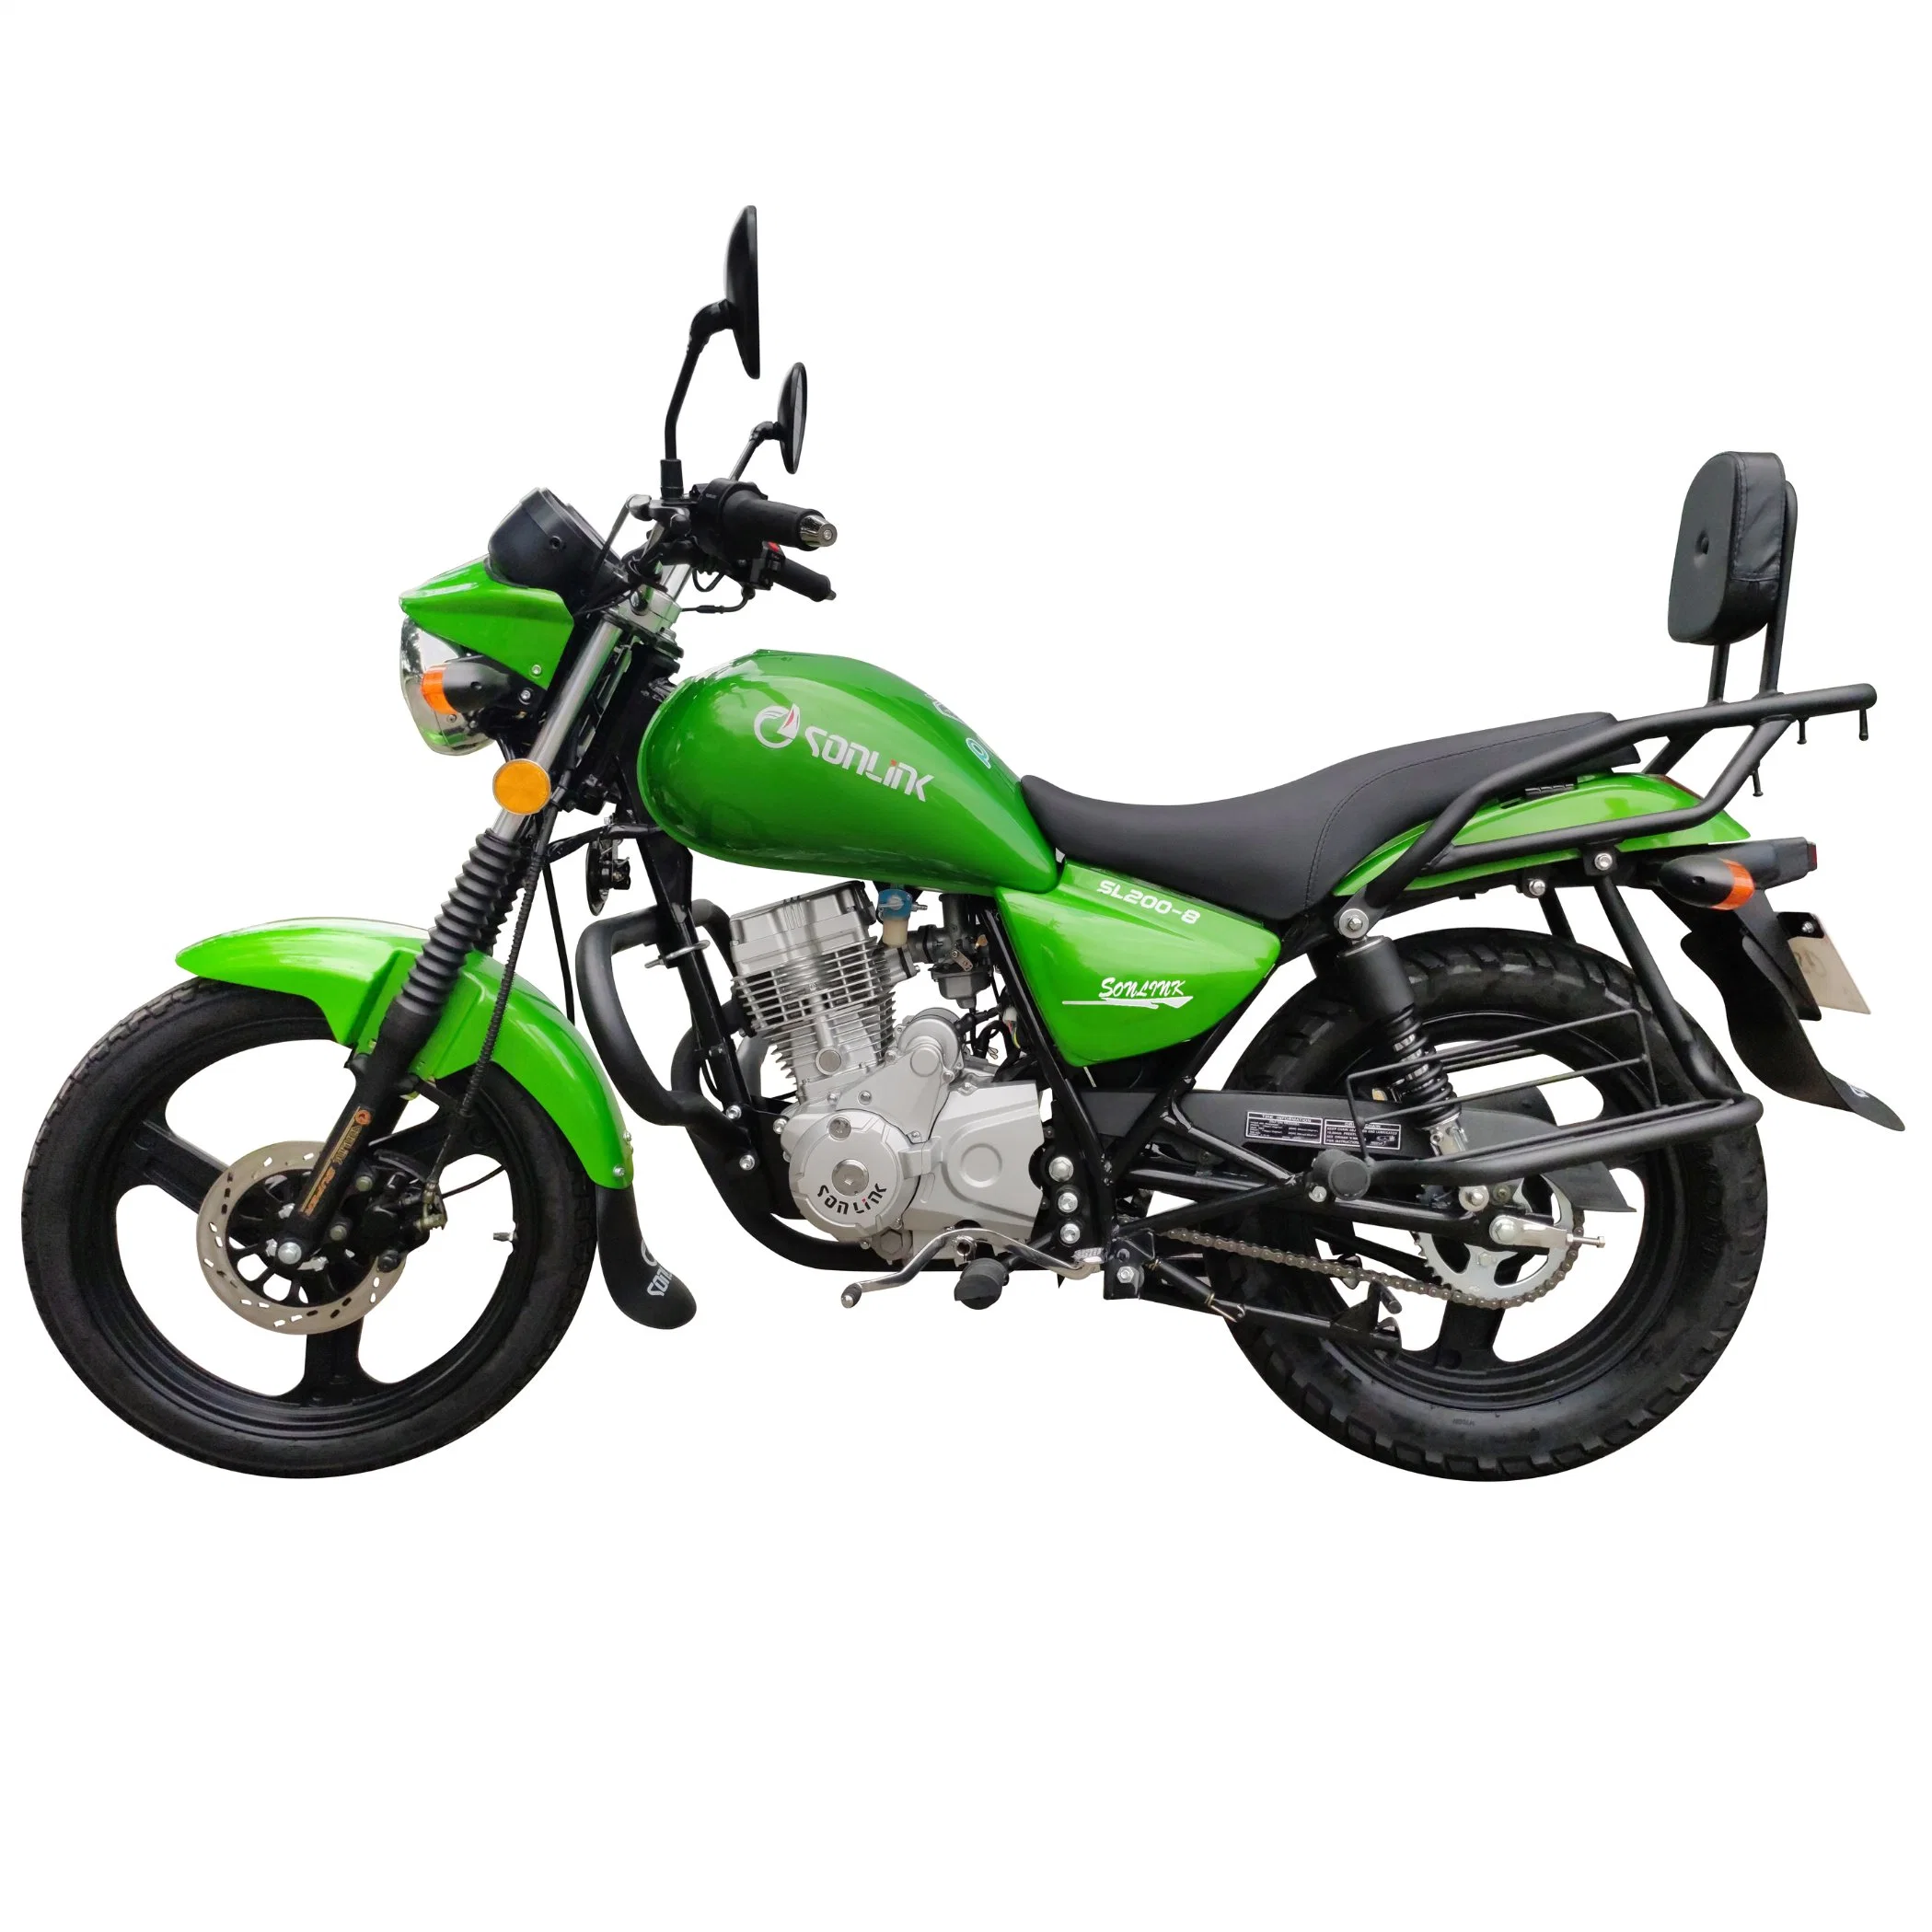 Carteiro 250cc Dirt Bike / Moto / Veículo Eléctrico / 150cc Sccoter